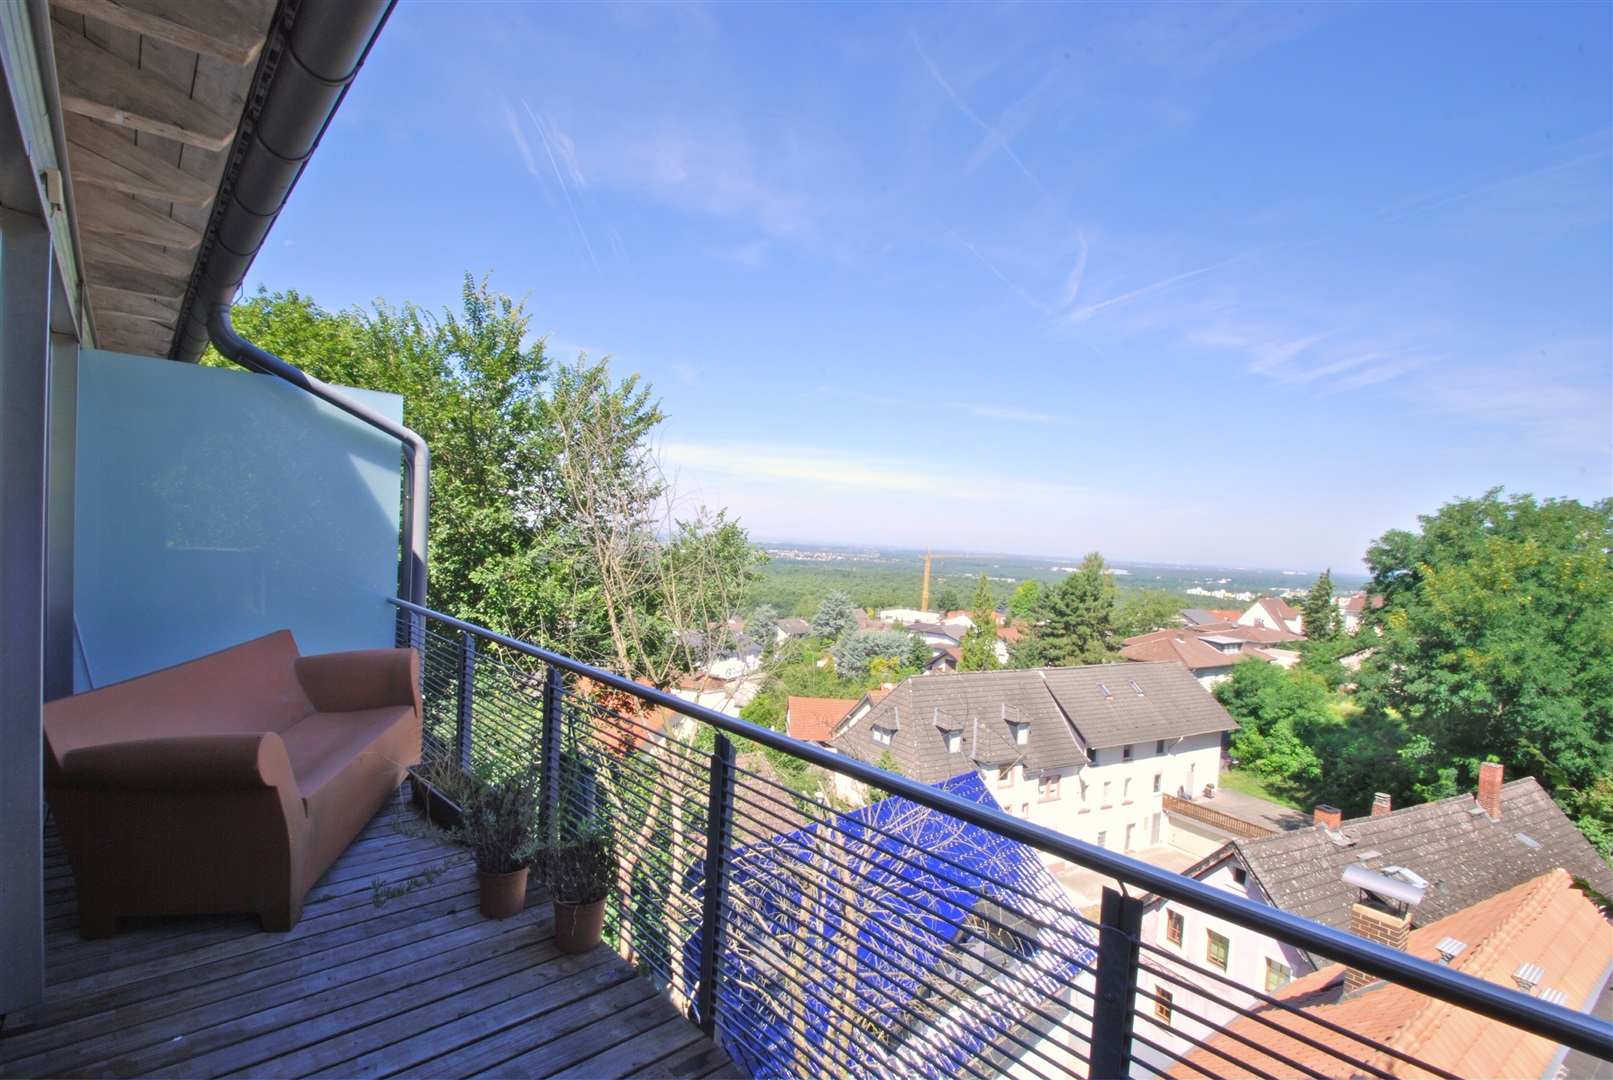 Terrasse mit Bangkirai Holzdielen vor dem Elternbereich. Panoramablick in die Rheinebene - Oliver Reifferscheid - Immobilienmakler Darmstadt